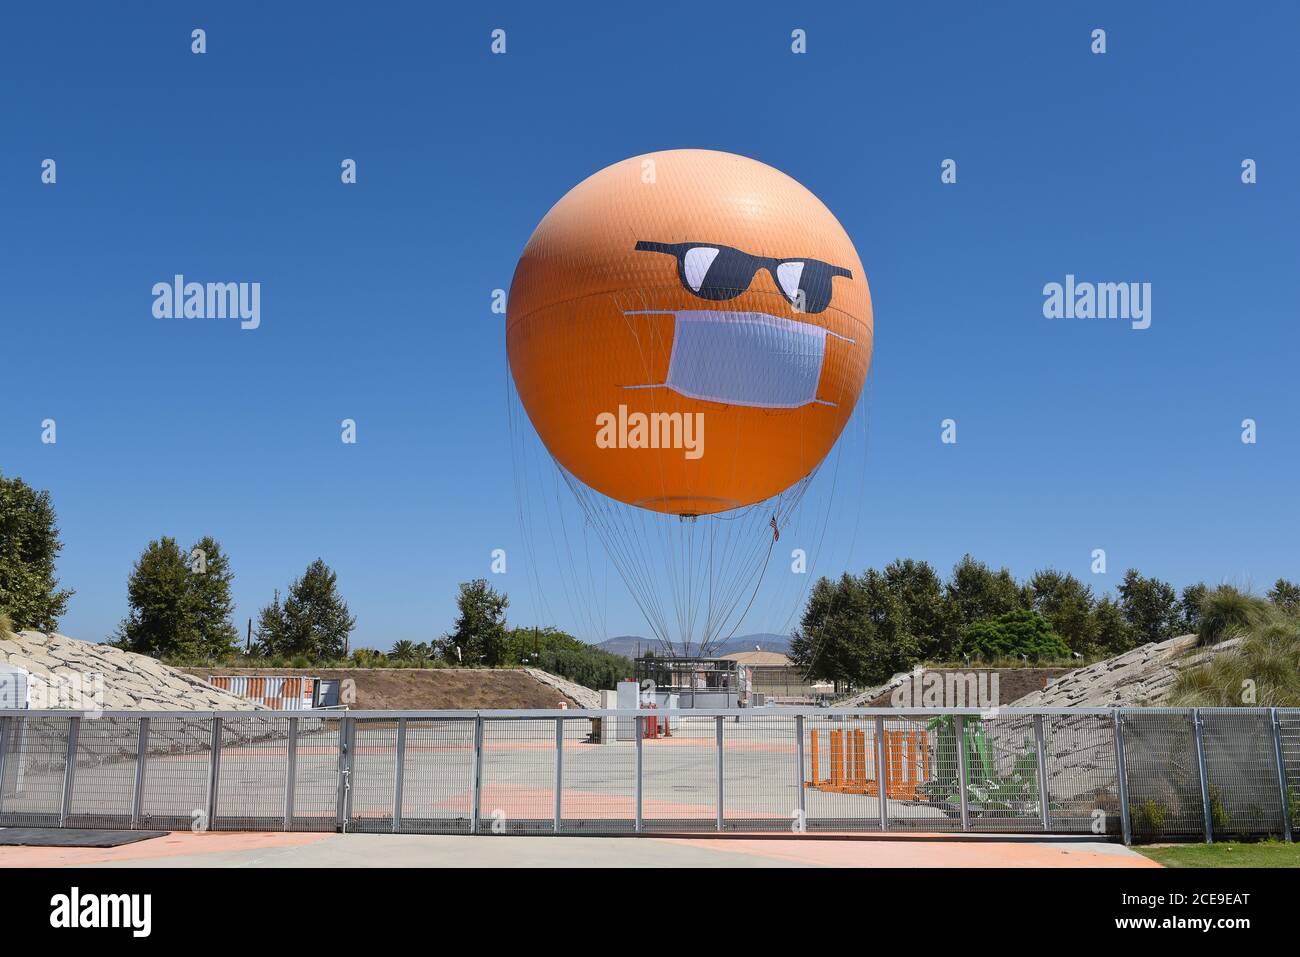 IRVINE, CALIFORNIE - 30 AOÛT 2020: Le Orange County Great Park Balloon Ride sport un masque COVID-19 et des lunettes de soleil comme il est assis à la gare. Banque D'Images